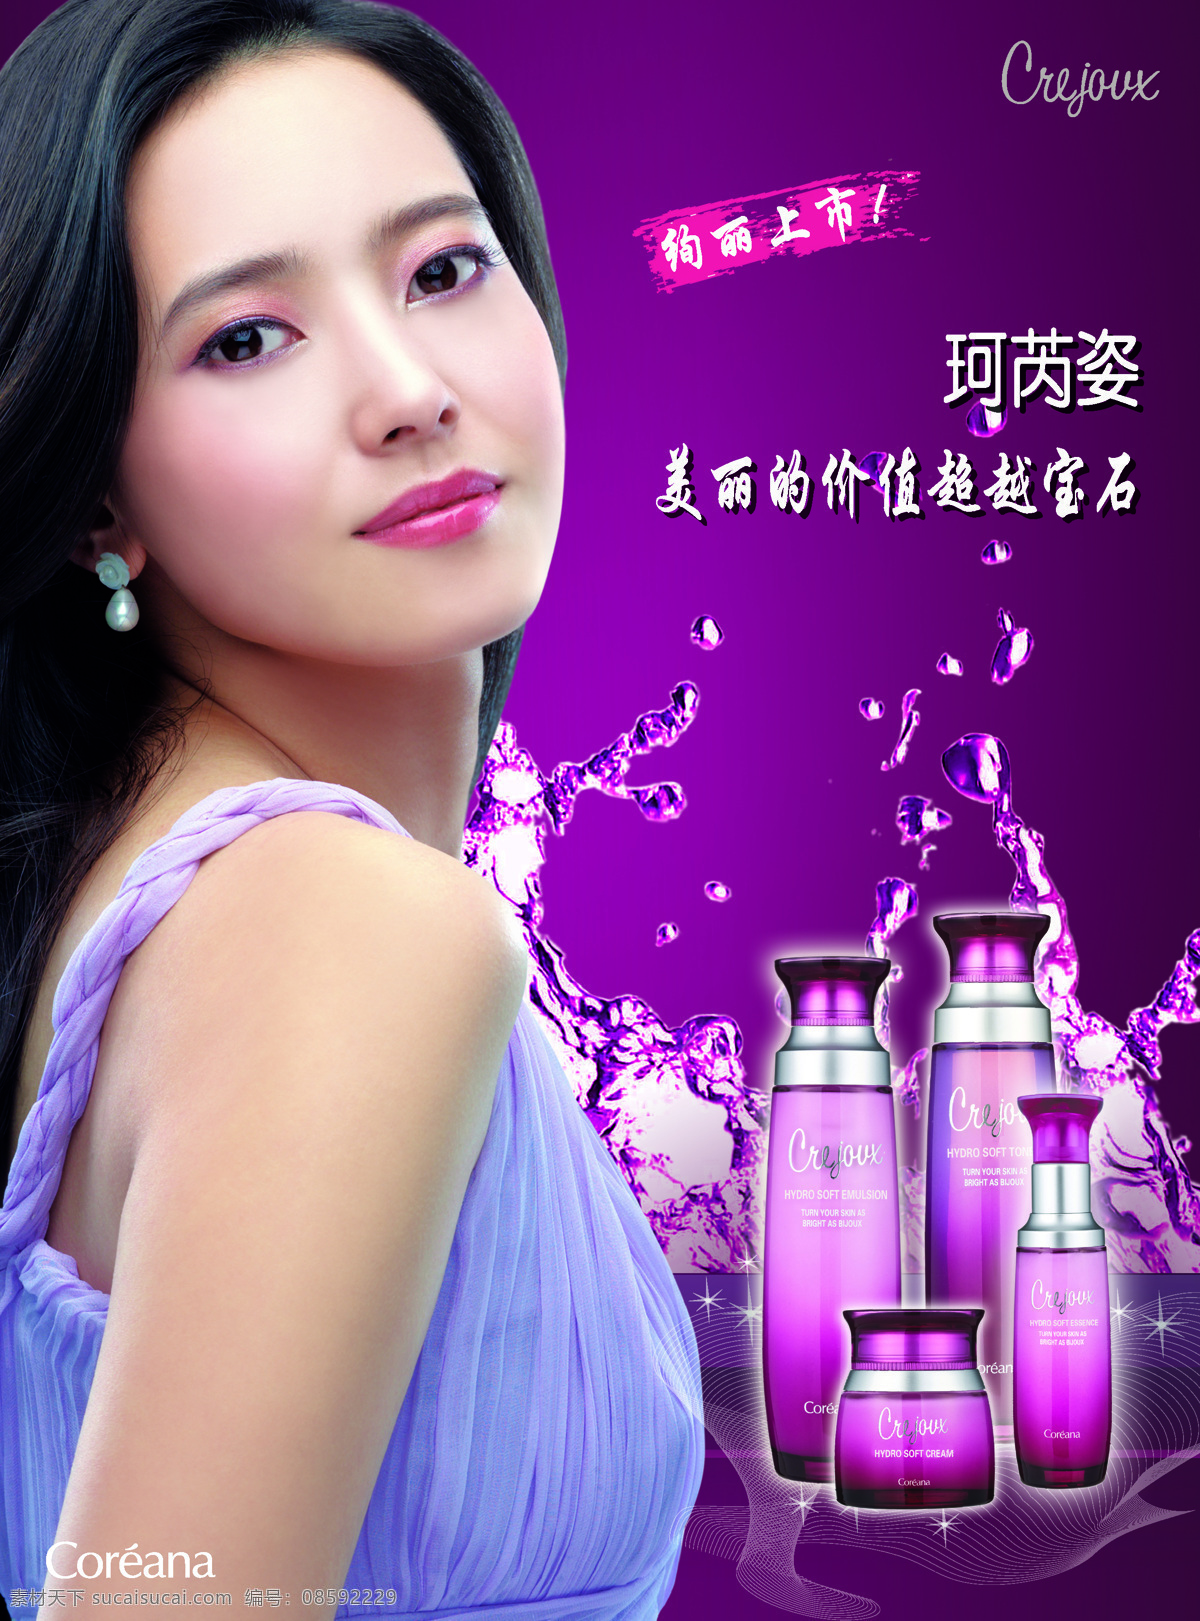 韩国 高丽 雅 娜 珂 芮 姿 系列 海报 高丽雅娜 珂芮姿 紫色 背景 水 化妆品 产品 代言人 绚丽上市